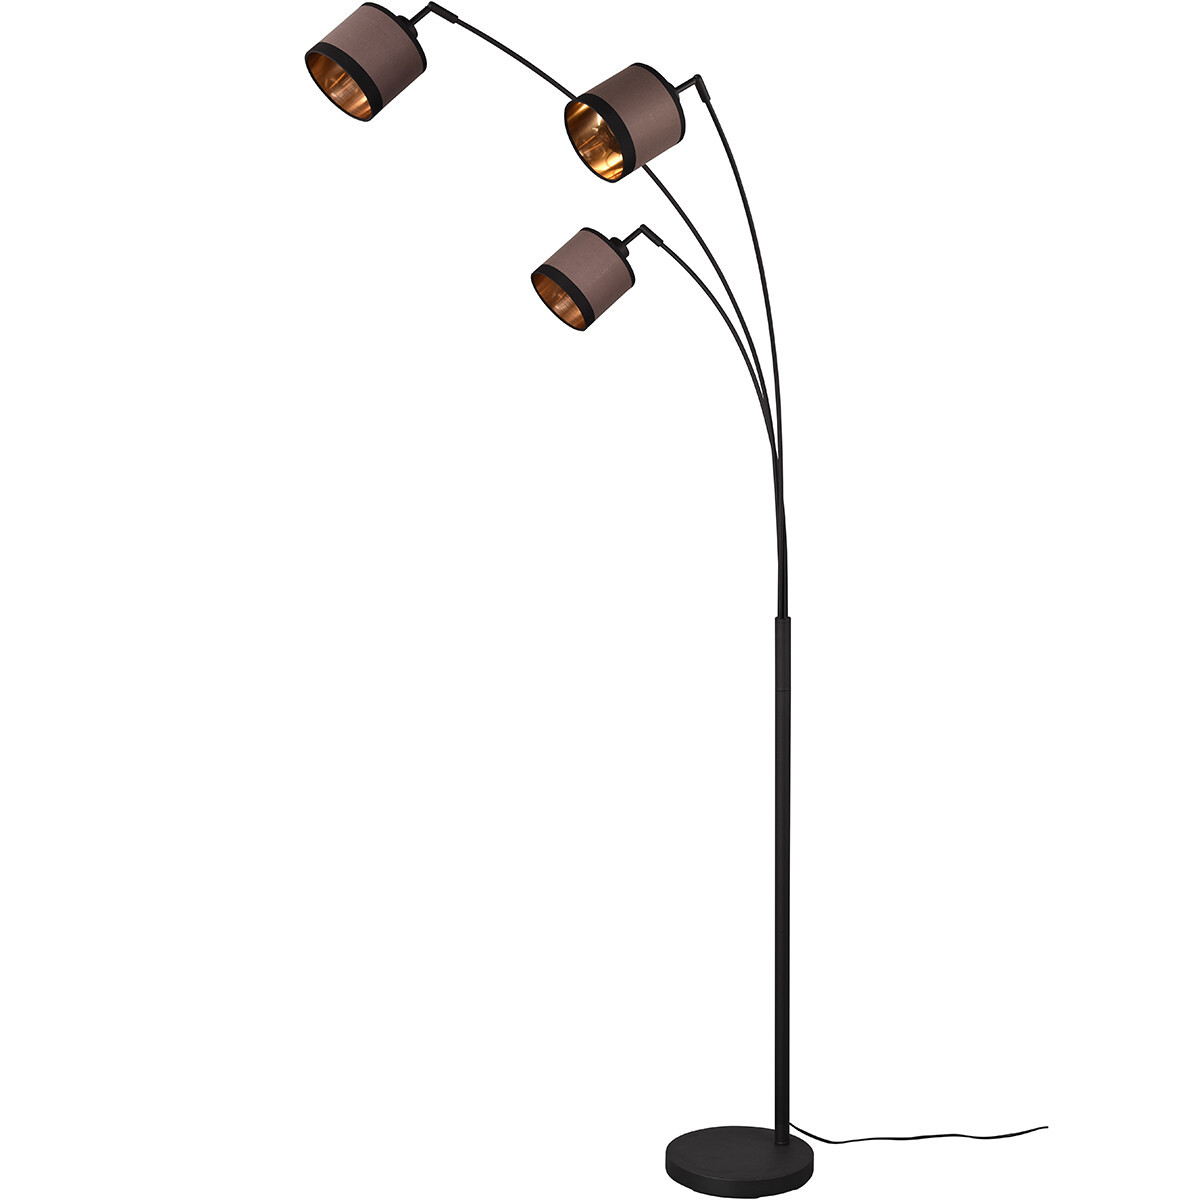 LED Vloerlamp - Trion Vamos - E14 Fitting - 3-lichts - Rond - Mat Zwart - Metaal